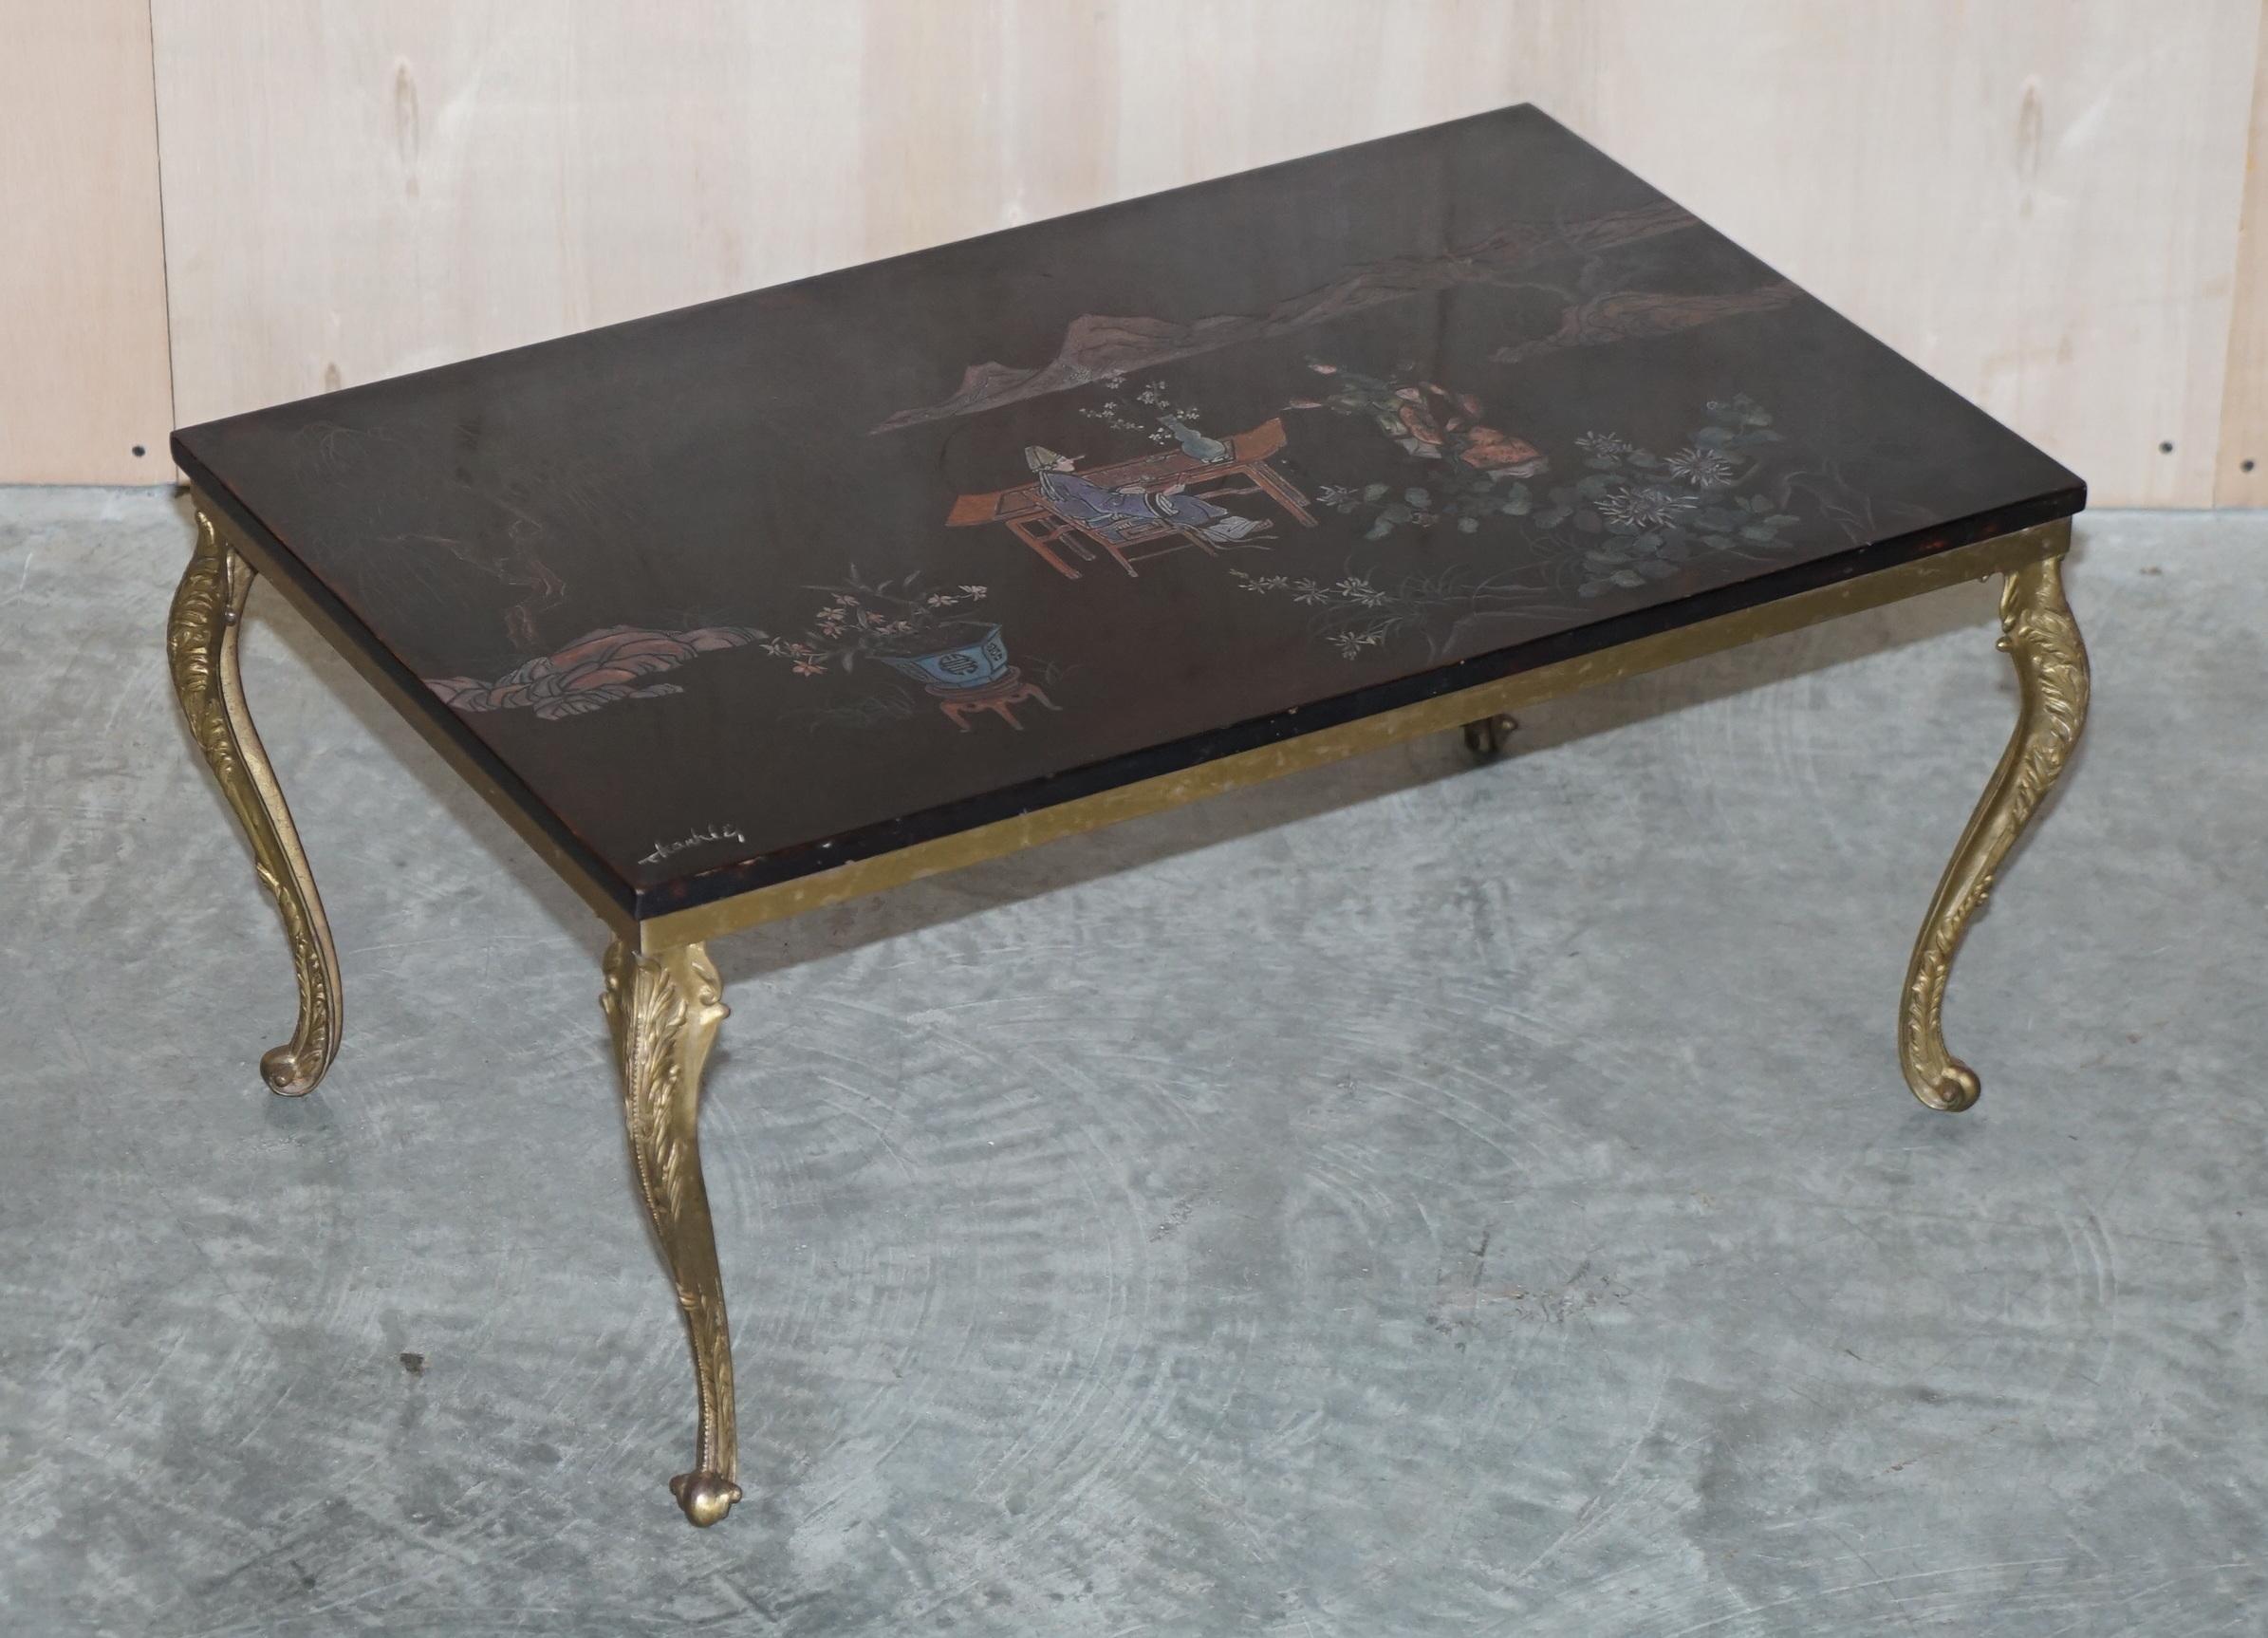 Nous sommes ravis d'offrir cette belle table basse chinoise vintage peinte à la main et signée

Une pièce très belle et bien faite, le dessus est dans une sorte de bois dur, il est signé dans le coin inférieur gauche par l'artiste. Le cadre de la